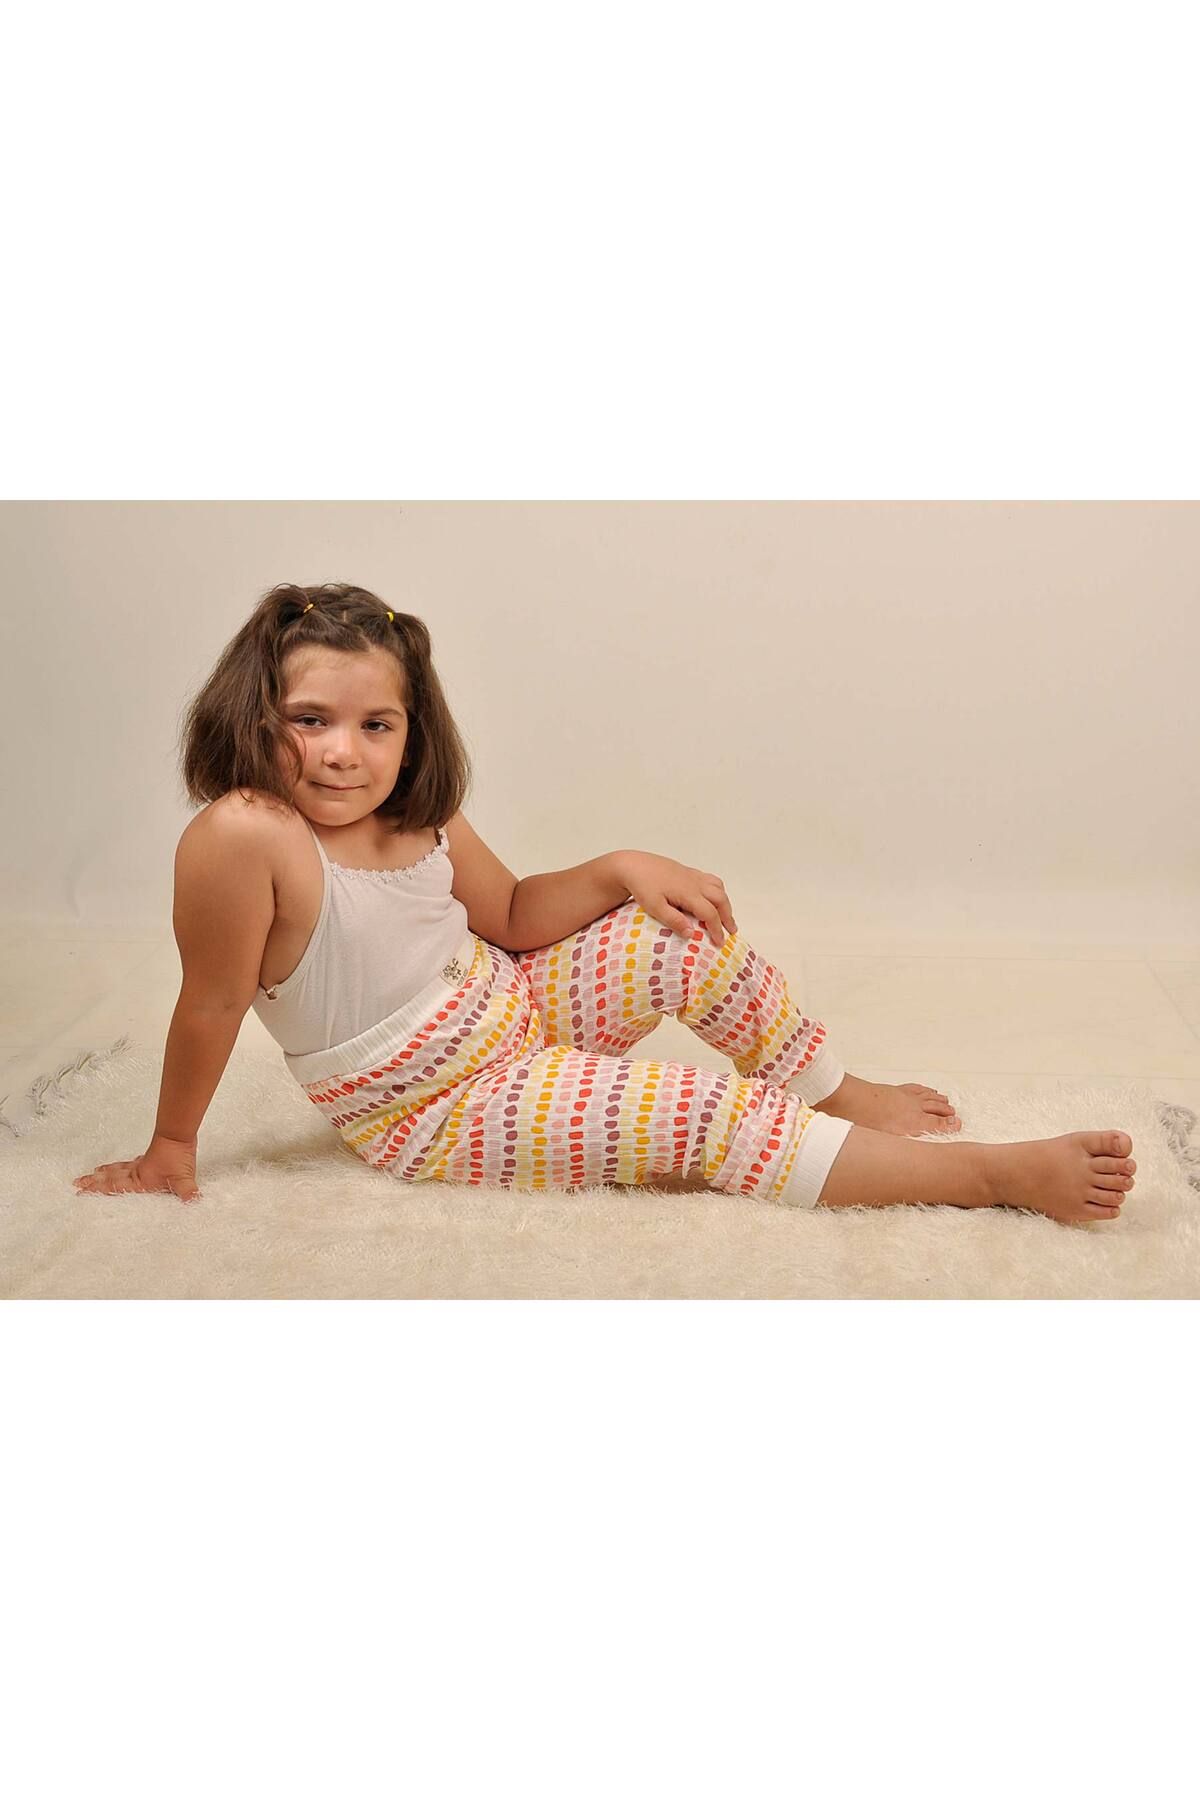 Peki Çocuk 5 Al 4 Öde Mevsimlik Yumuşak Penye Pamuk Geniş Kalıp Mozaik Taşlar Baskı Pijama Pantolon 14880